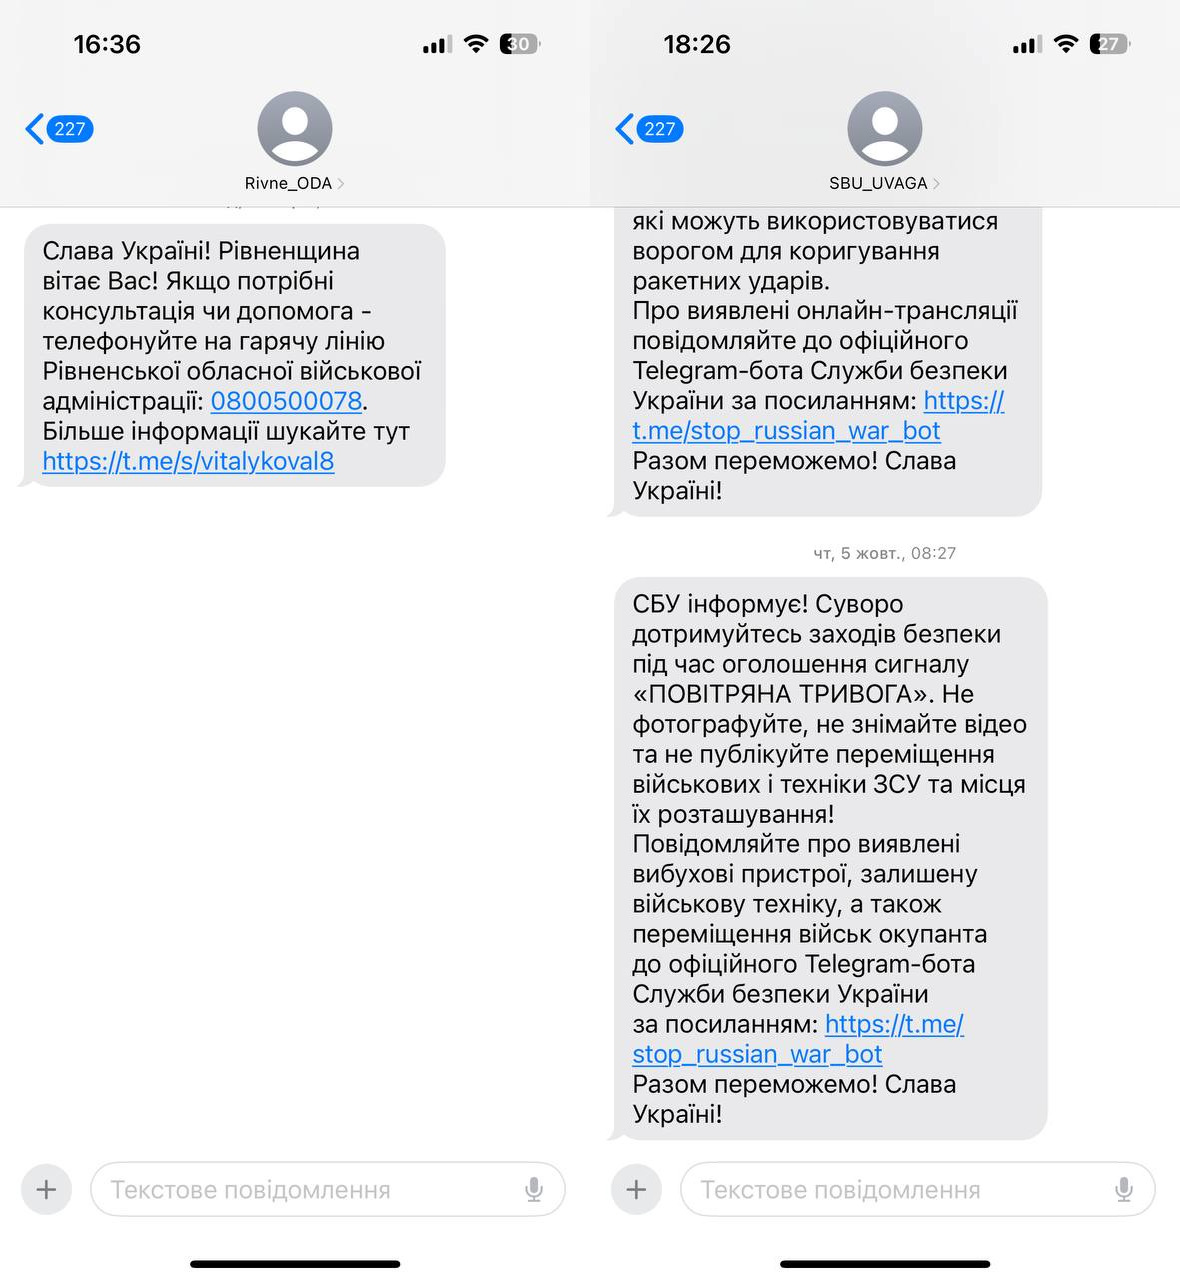 Приклад повідомленнь від обласної адміністрації та СБУ